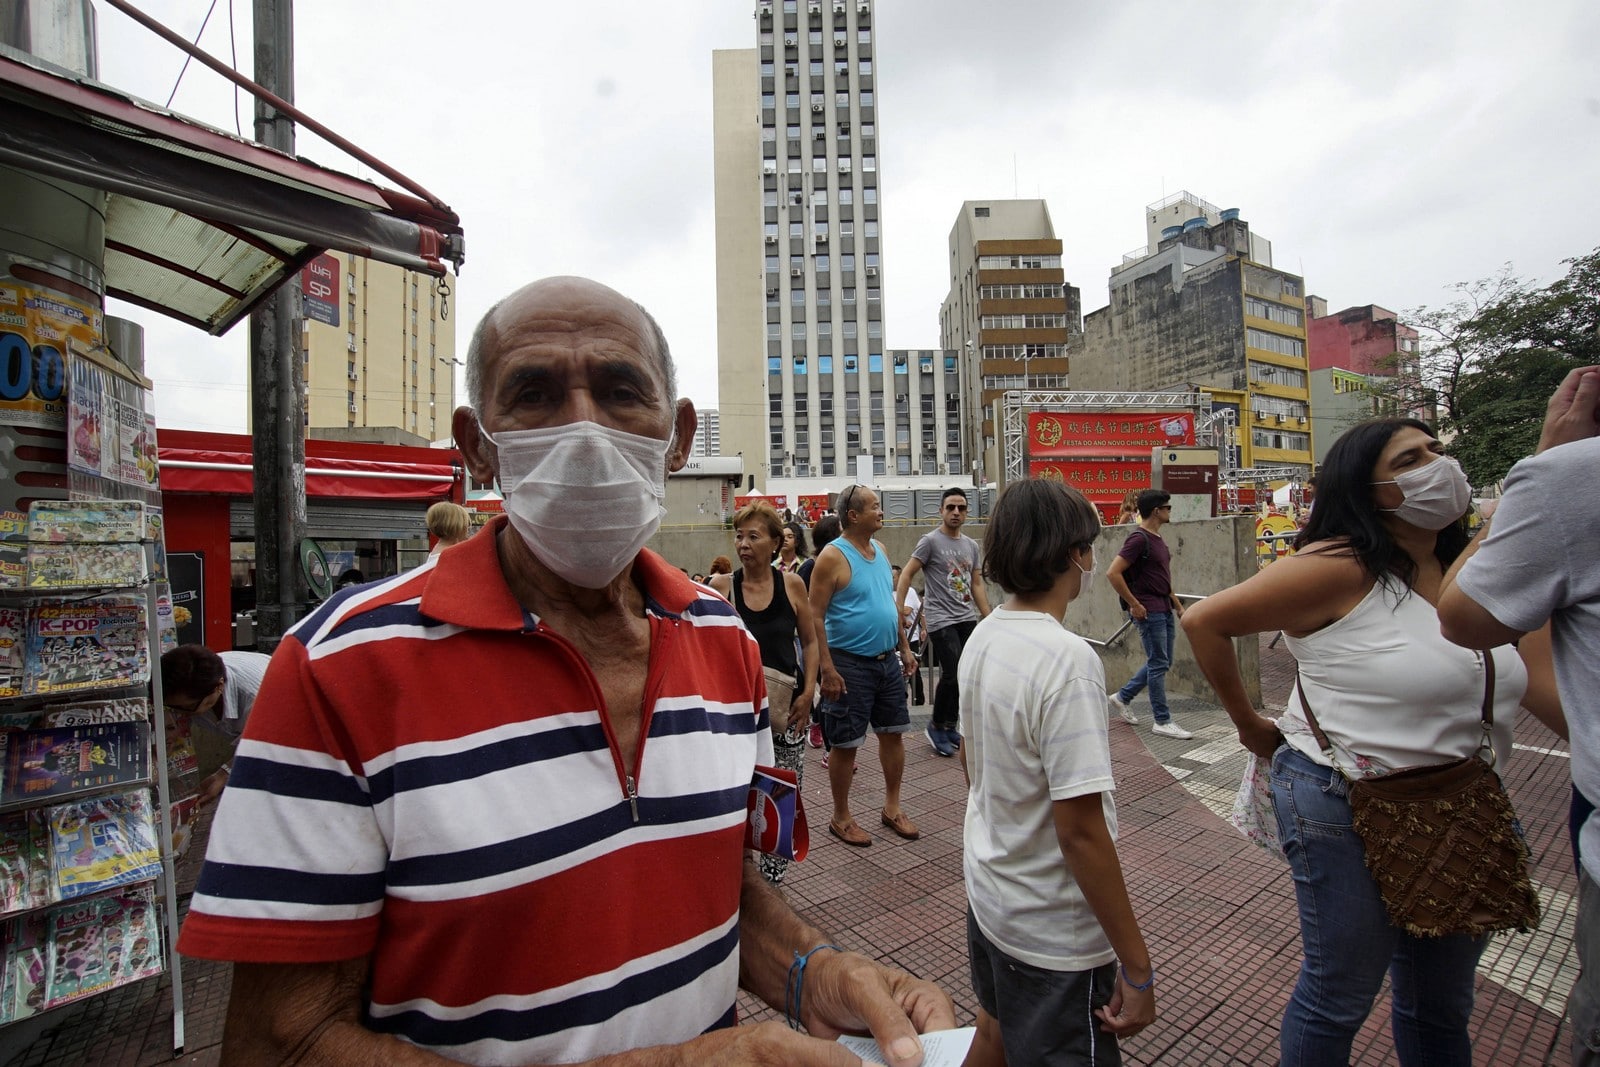 A São Paulo, le 2 février 2020, des activités du Nouvel An chinois ont été annulées en raison du danger du coronavirus,
Auteurs  : Cris Faga/Sipa USA/SIPA,
Numéro de reportage  : SIPAUSA30200912_000027.